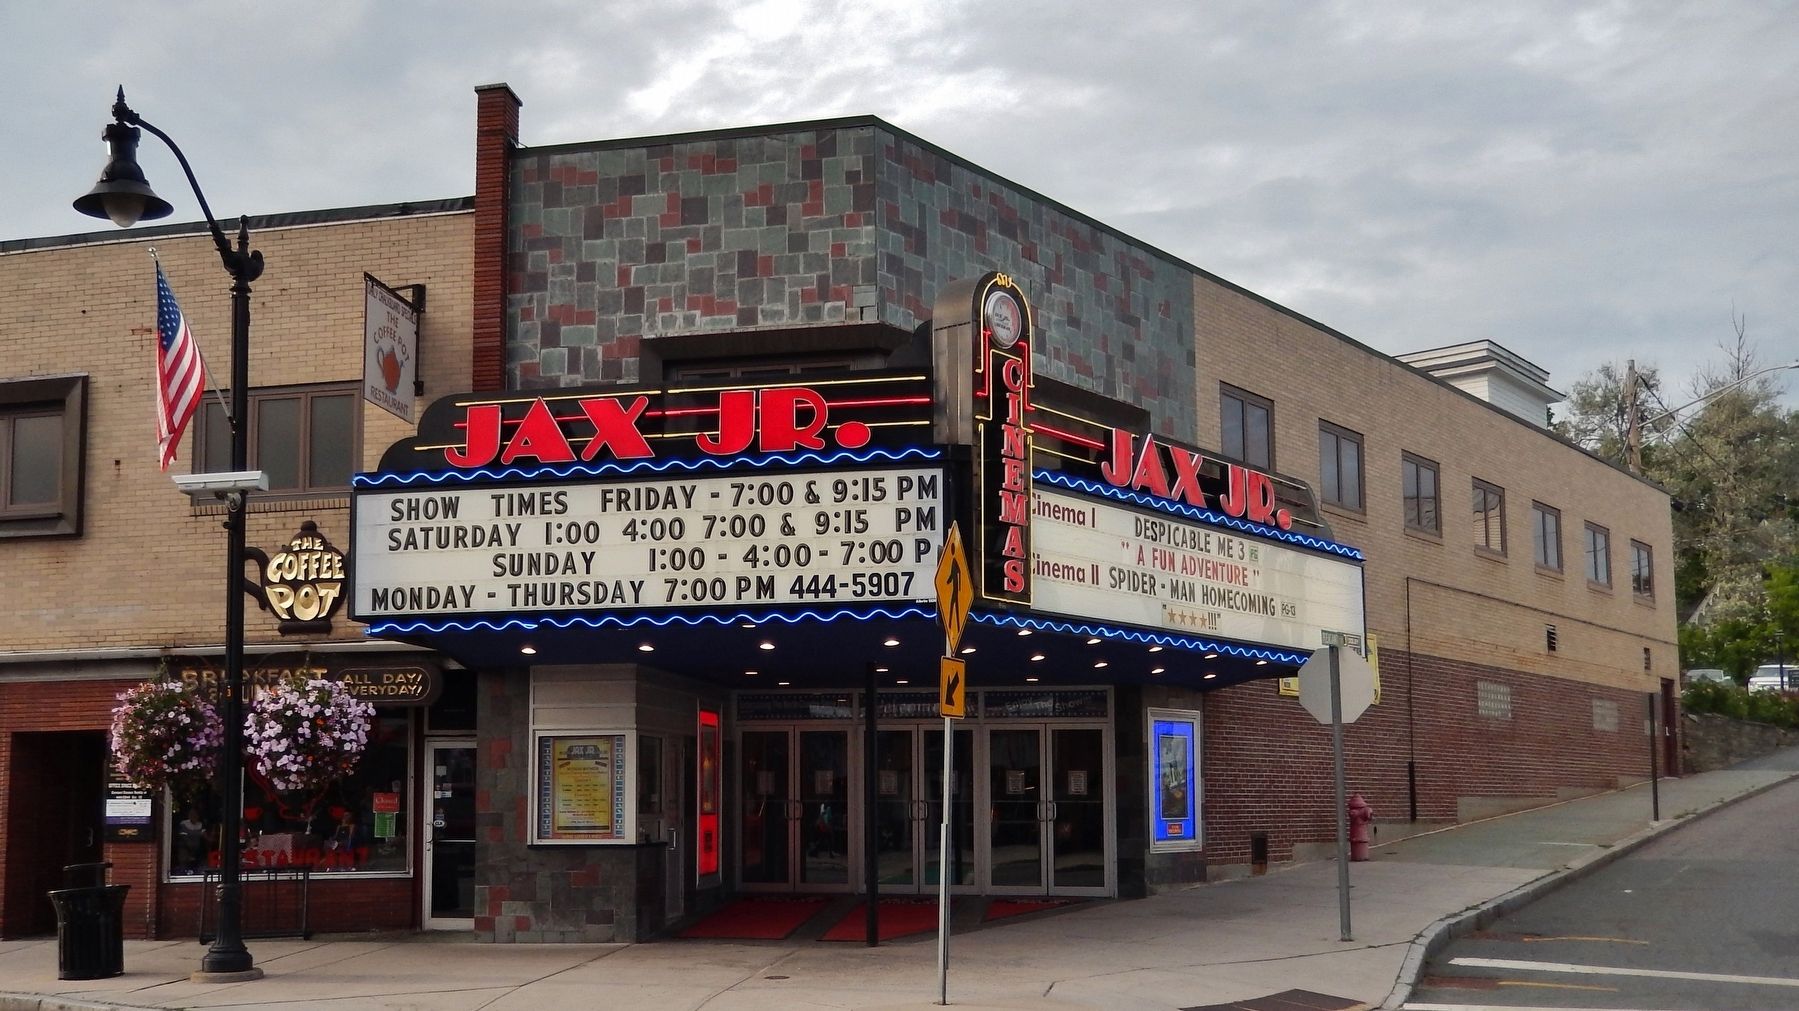 Jax Jr. Cinemas (<i>Main Street view</i>) image. Click for full size.